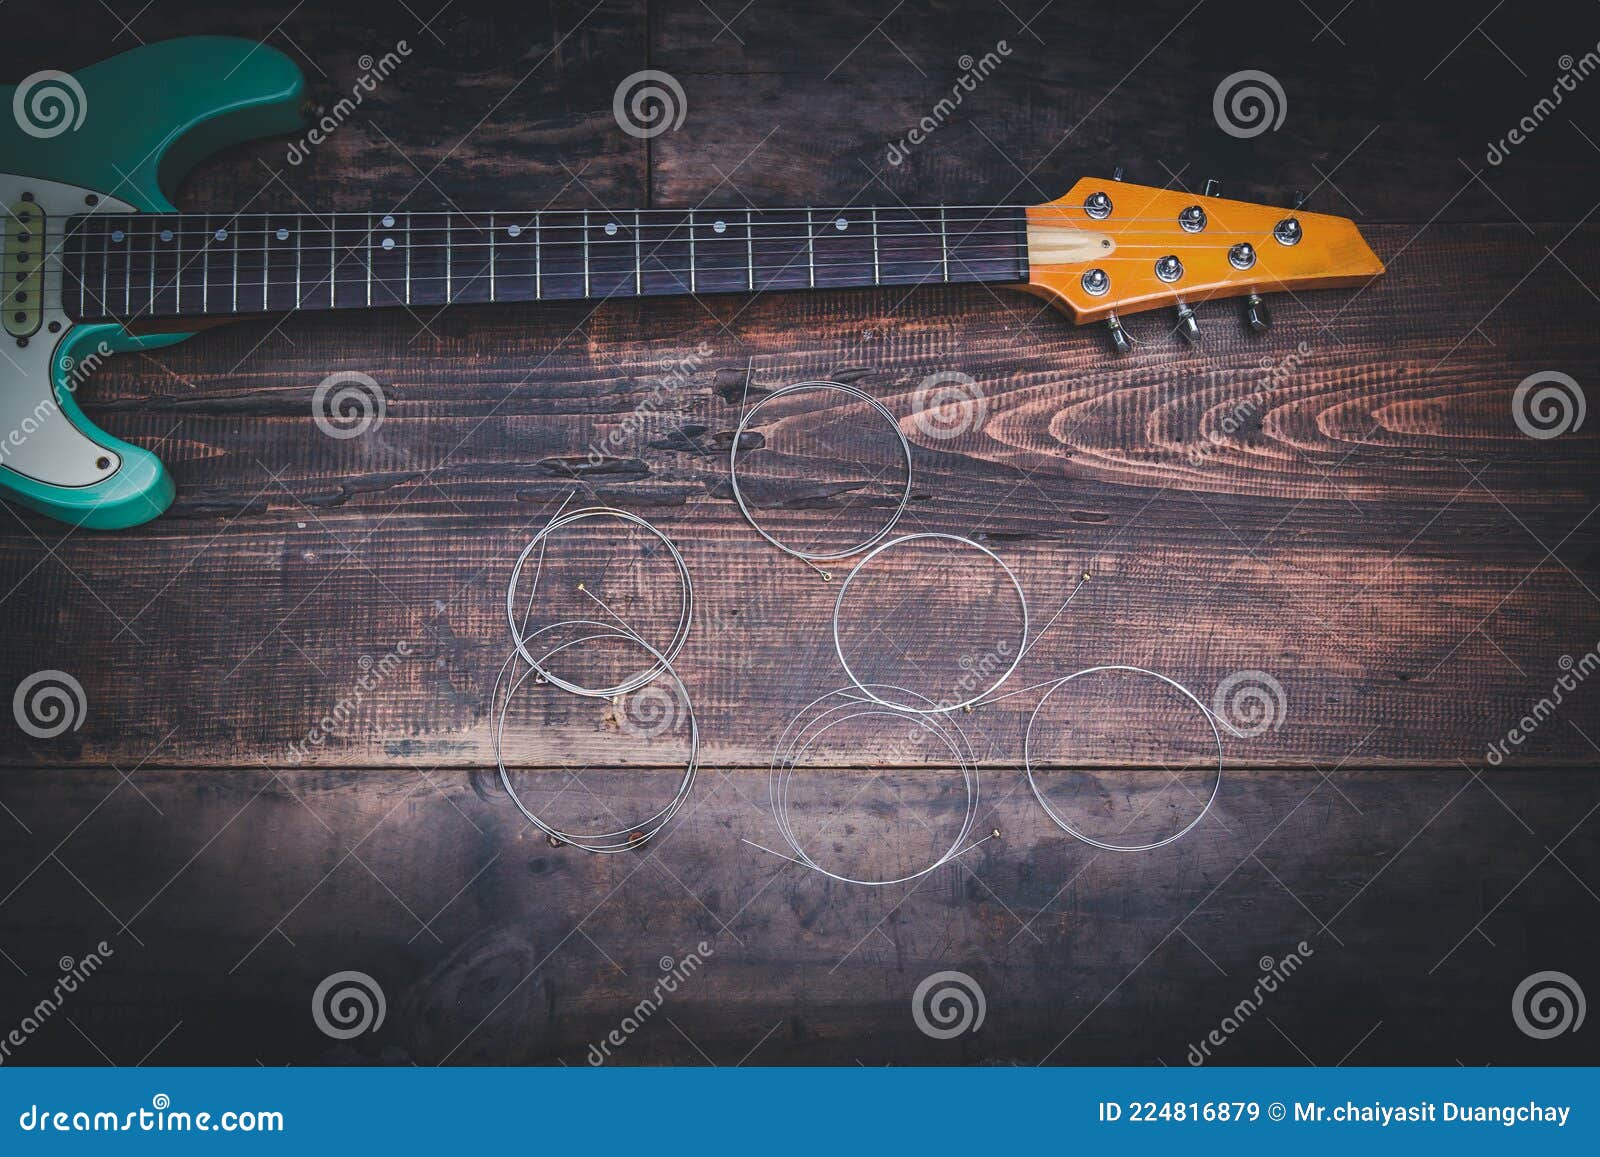 electric gritar and guitar strings on old vintage wood floor